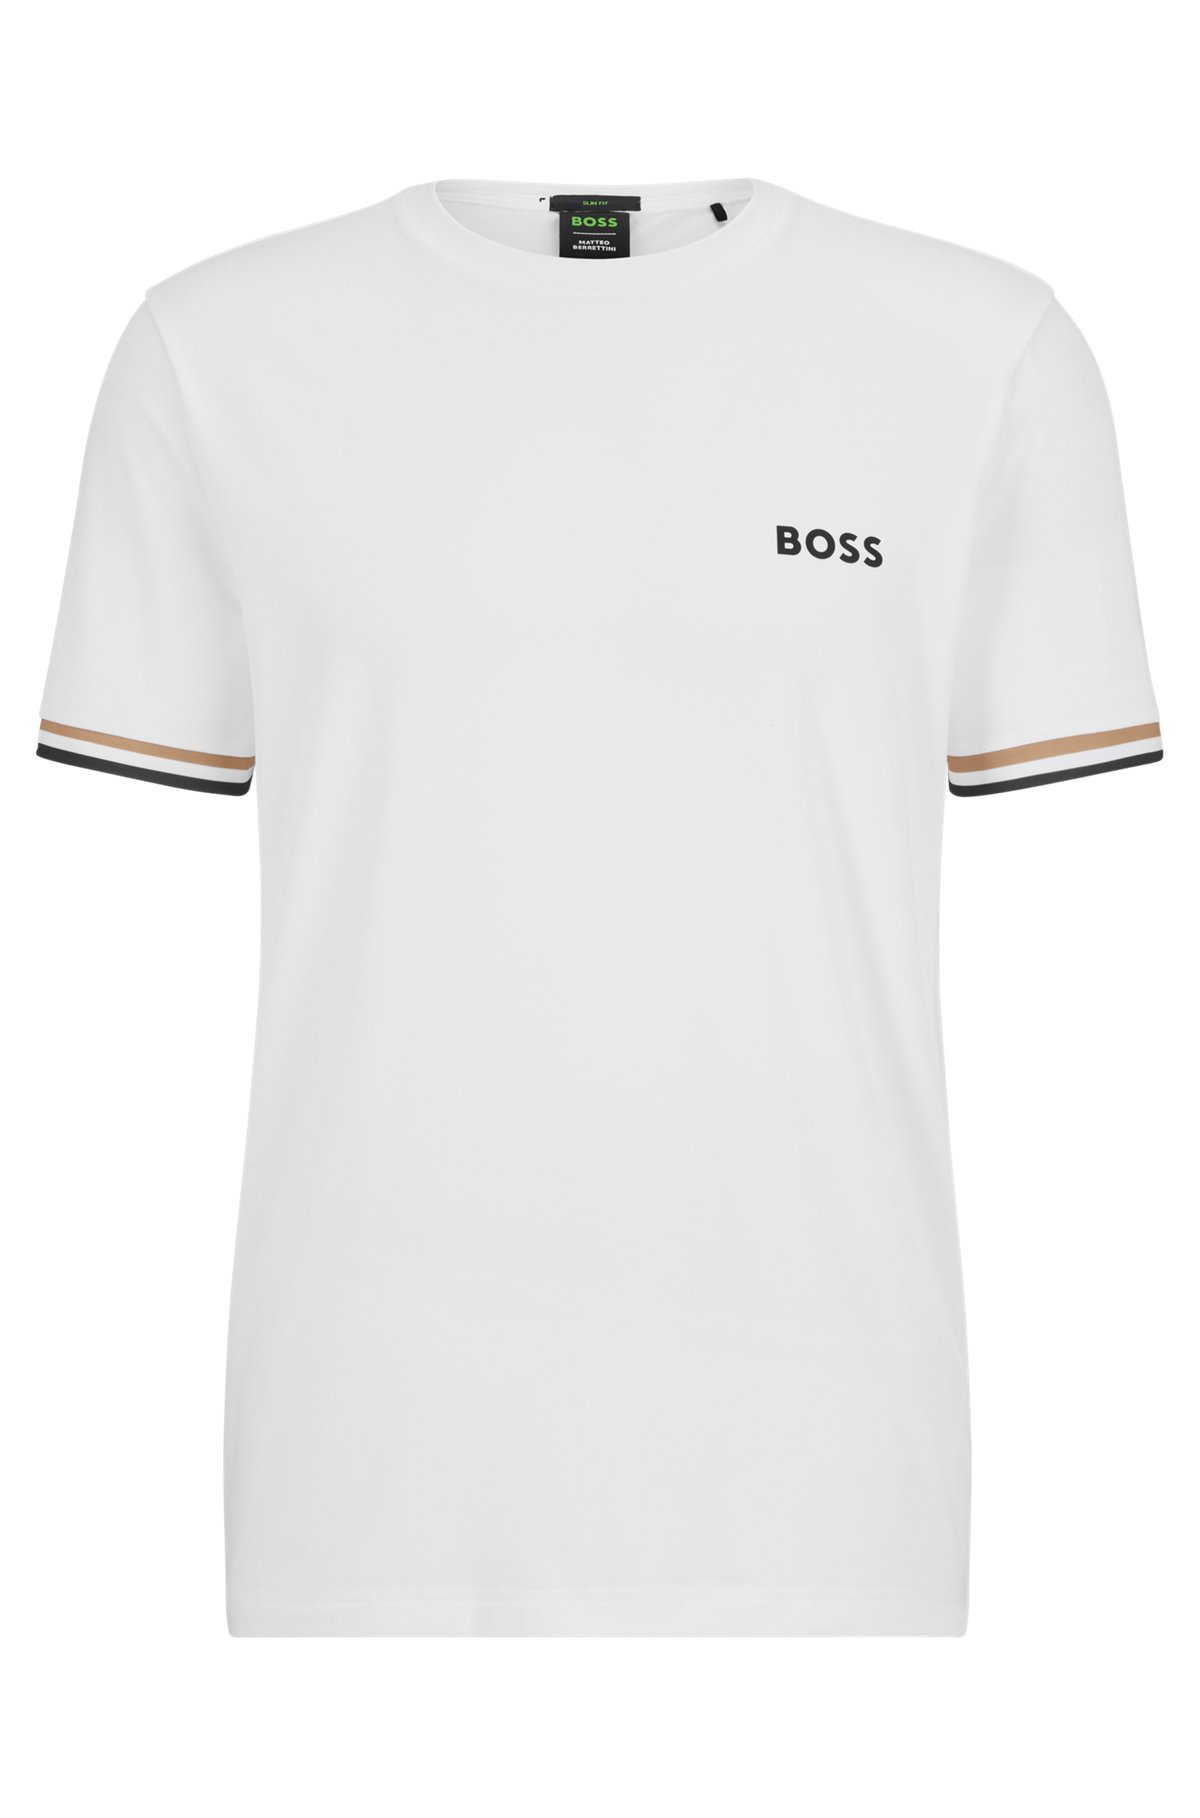 BOSS x Matteo Berrettini T-shirt a girocollo con logo e righe tipiche del marchio, Bianco